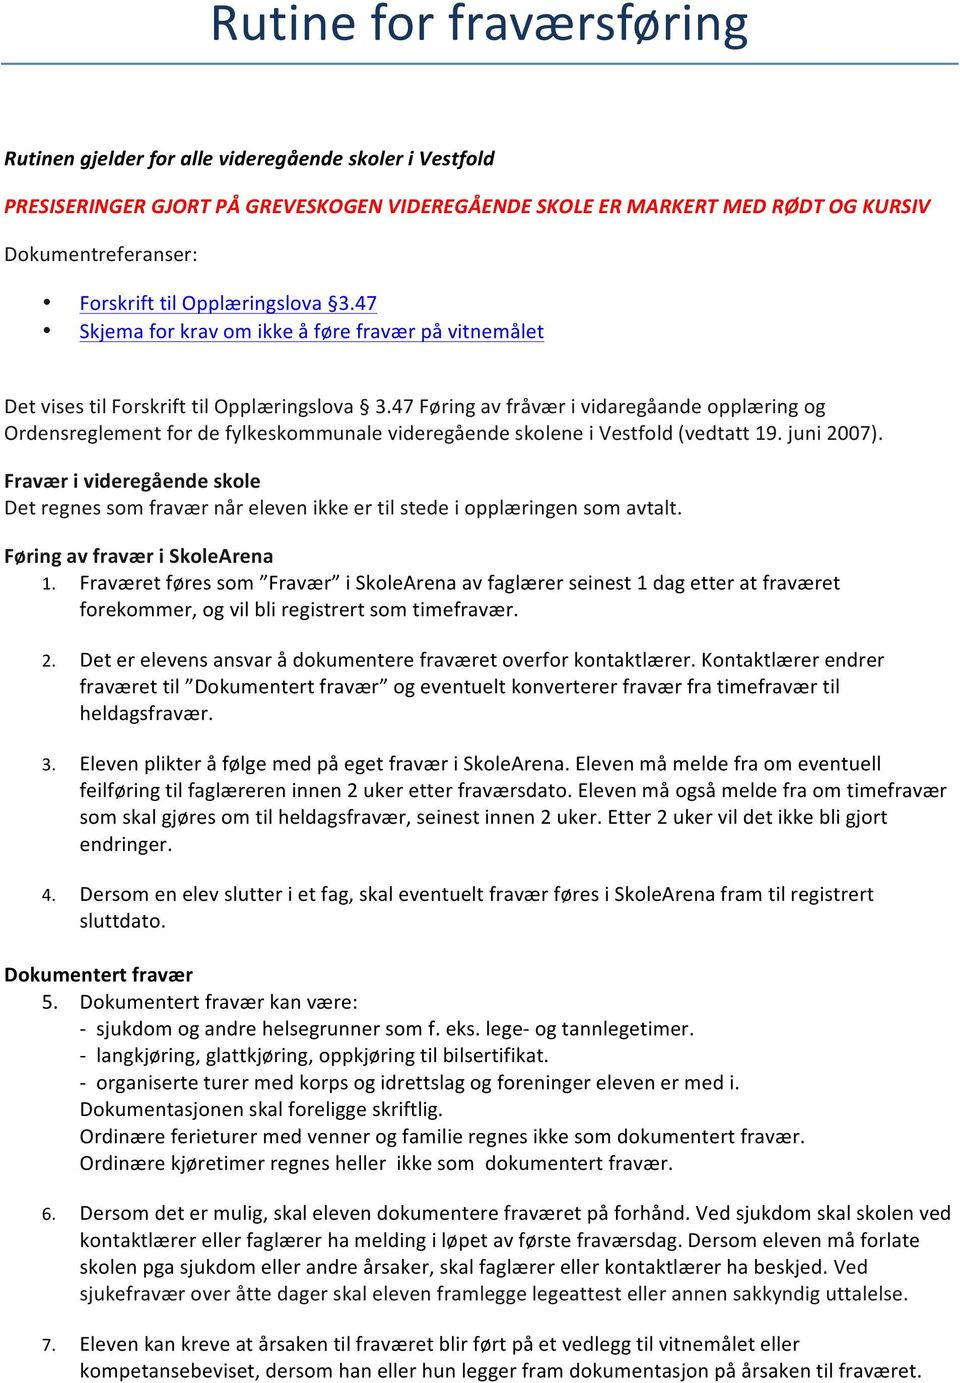 47 Føring av fråvær i vidaregåande opplæring og Ordensreglement for de fylkeskommunale videregående skolene i Vestfold (vedtatt 19. juni 2007).